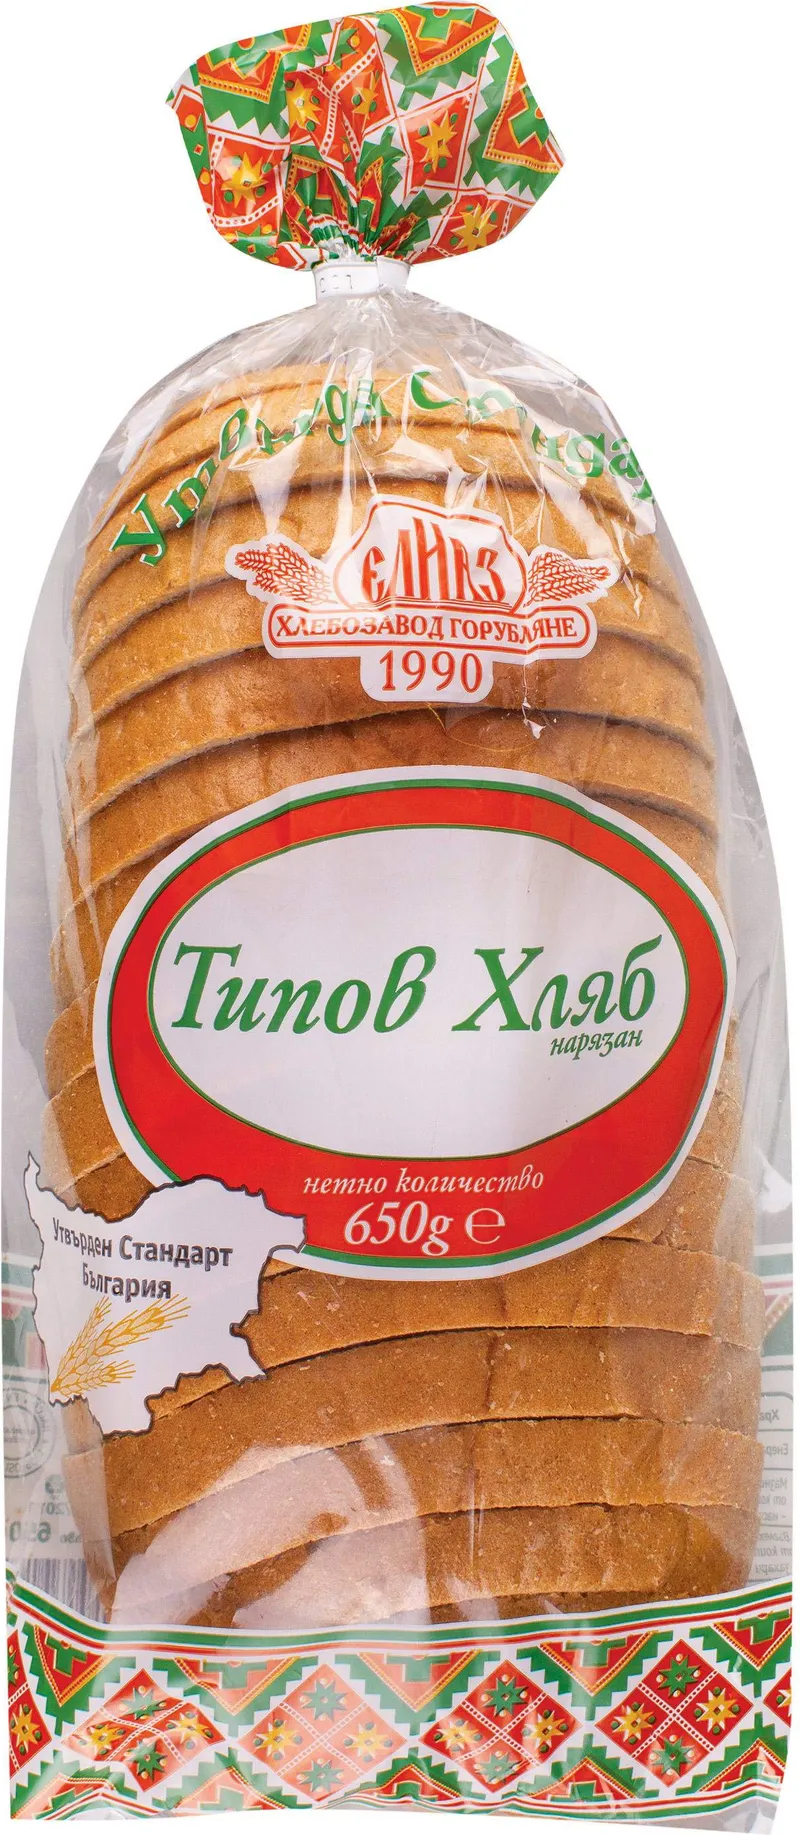 Хляб Типов Нарязан 650 Гр Утвърден Стандарт -